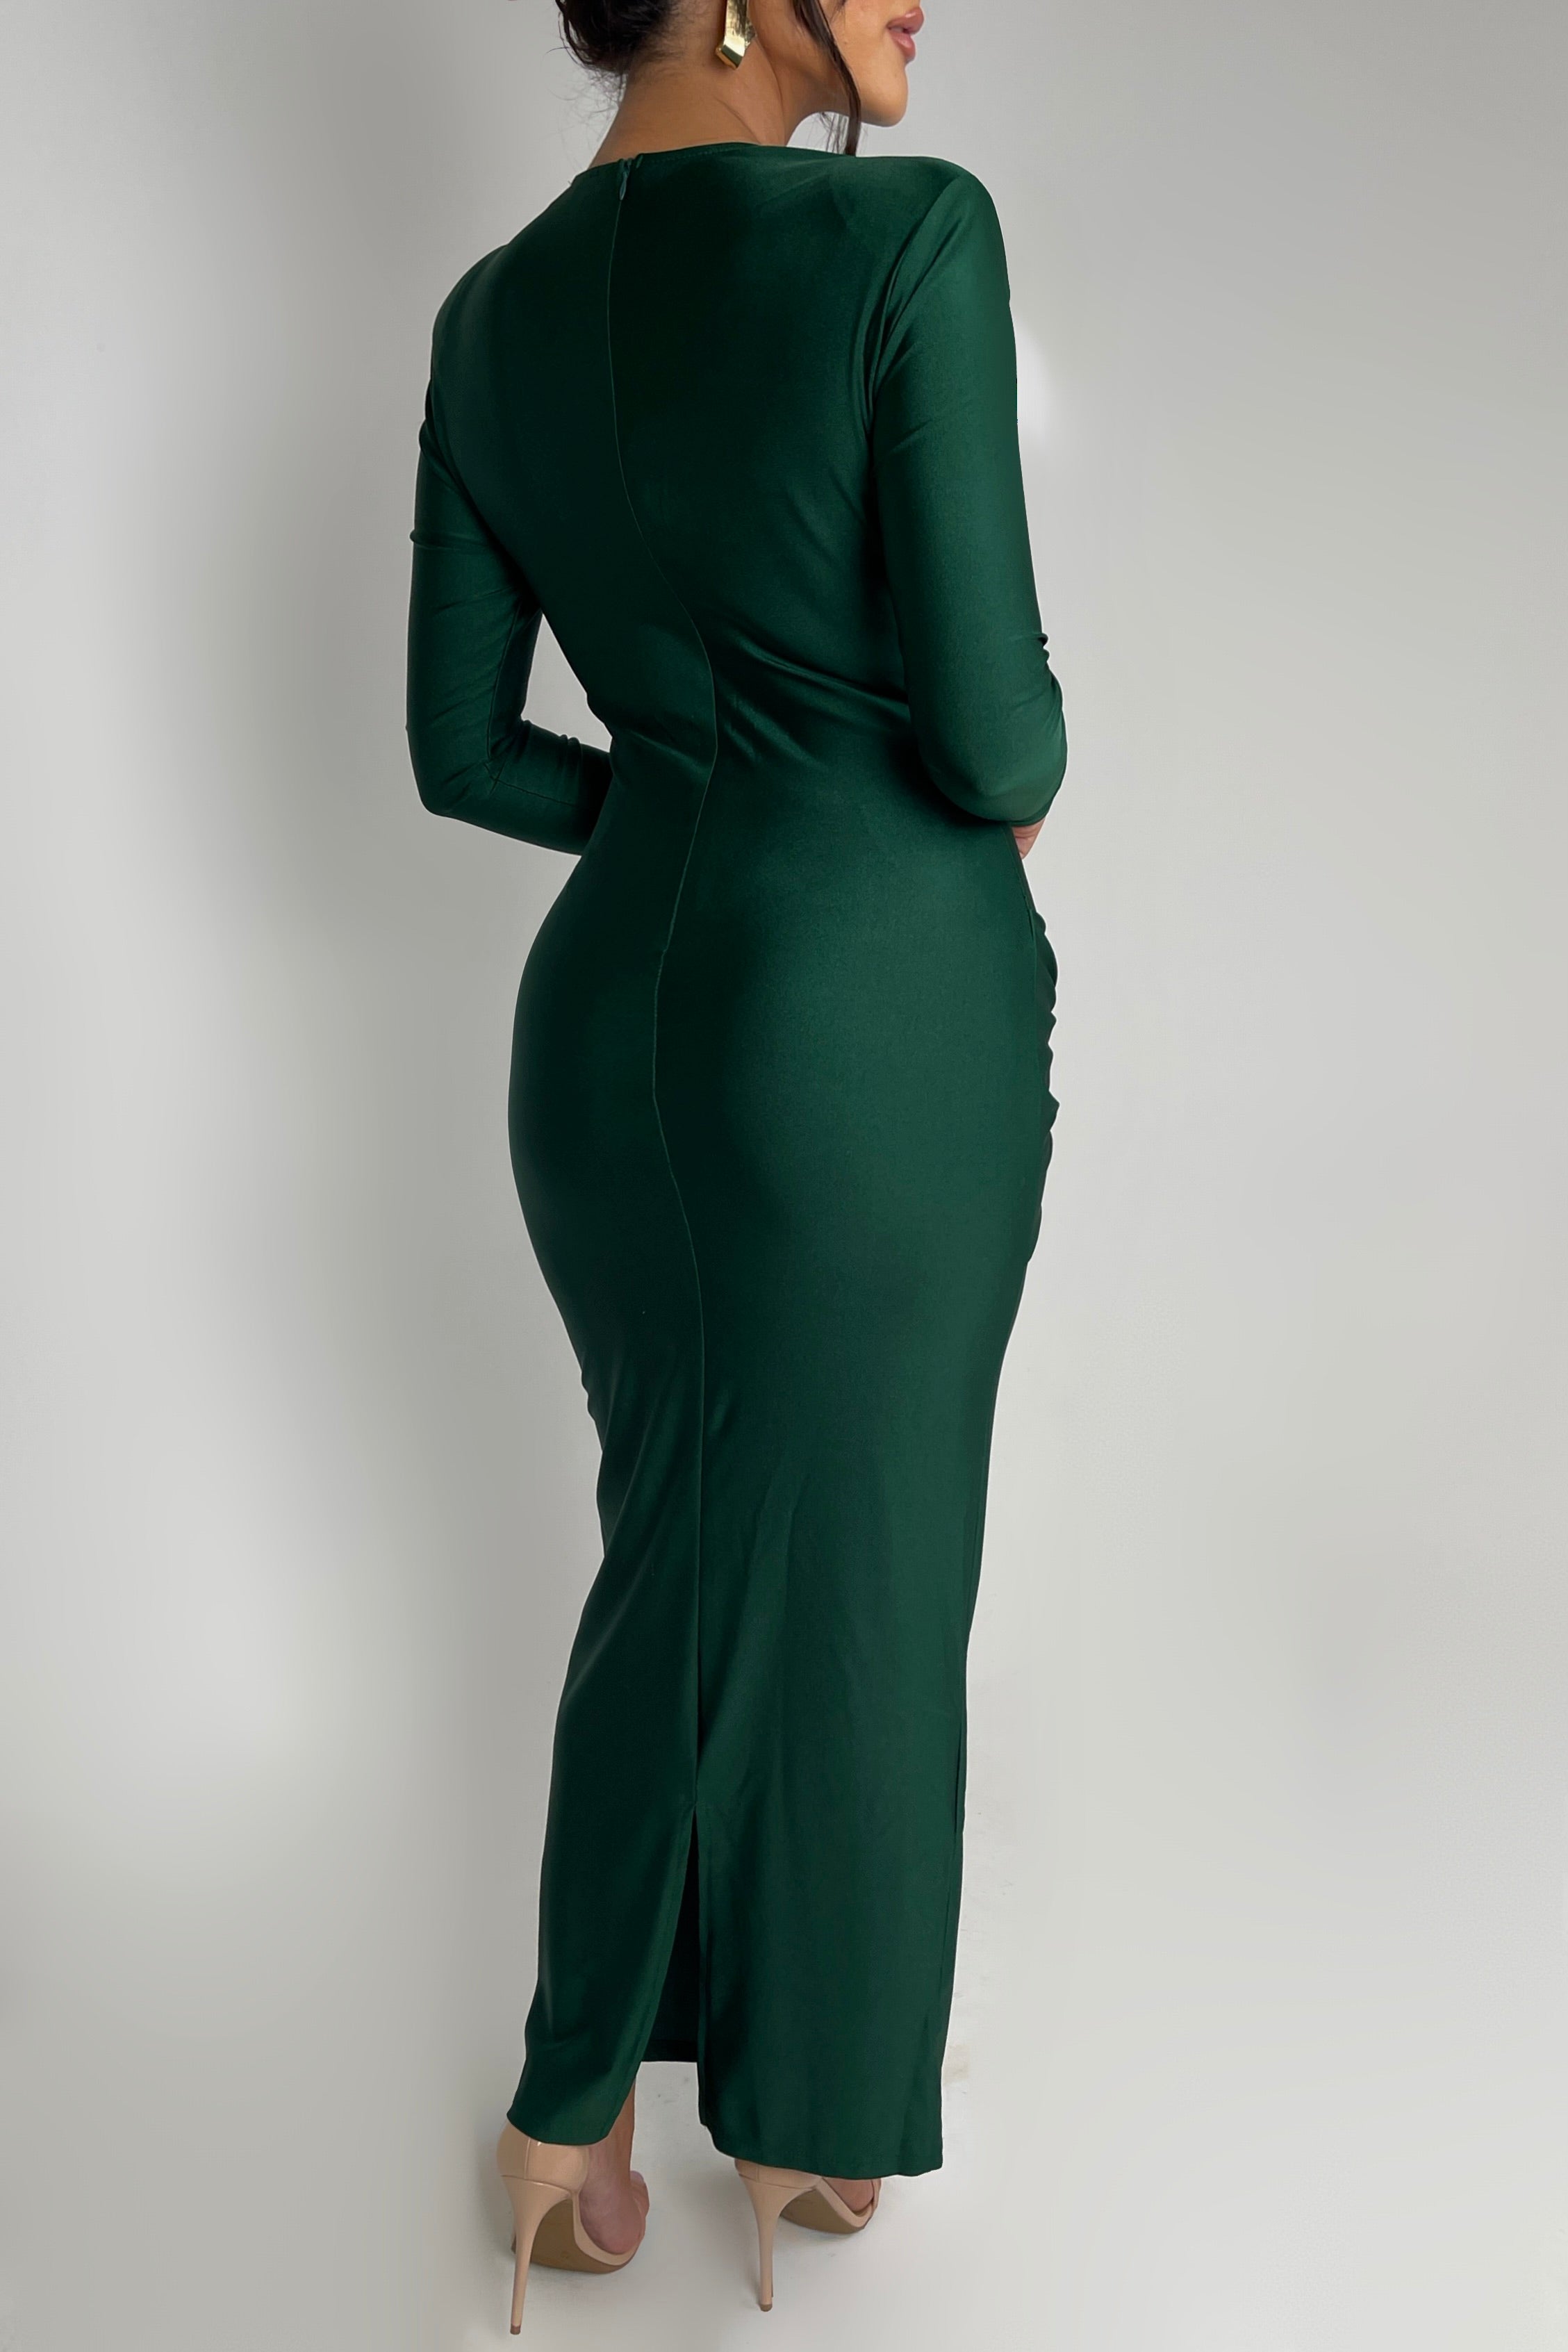 Veronica Hunter Green Dress